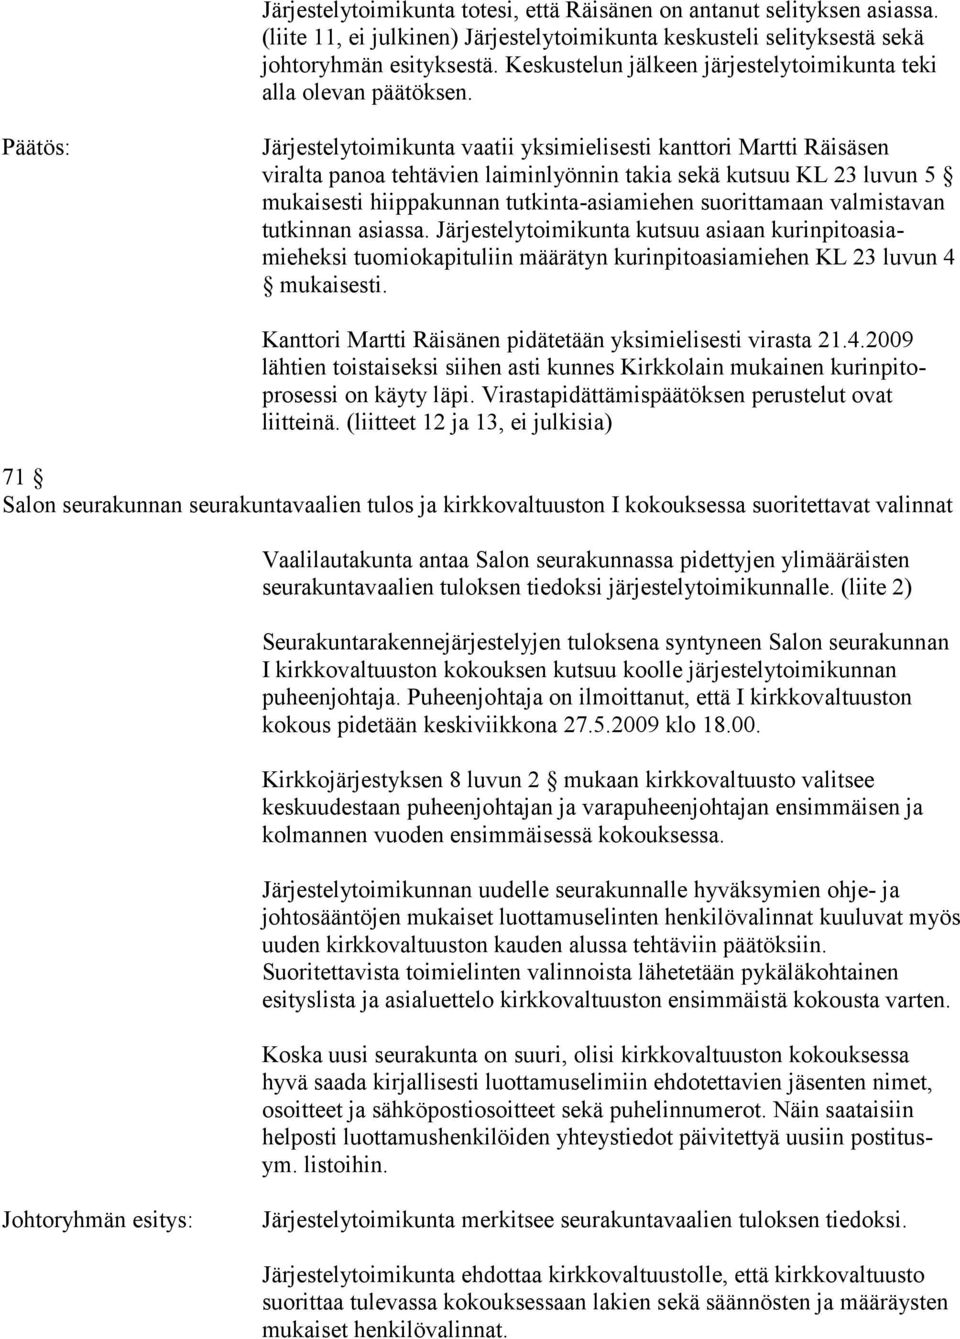 Järjestelytoimikunta vaatii yksimielisesti kanttori Martti Räisäsen viralta panoa tehtävien laiminlyönnin takia sekä kutsuu KL 23 luvun 5 mukaisesti hiippakunnan tutkinta-asiamiehen suorittamaan